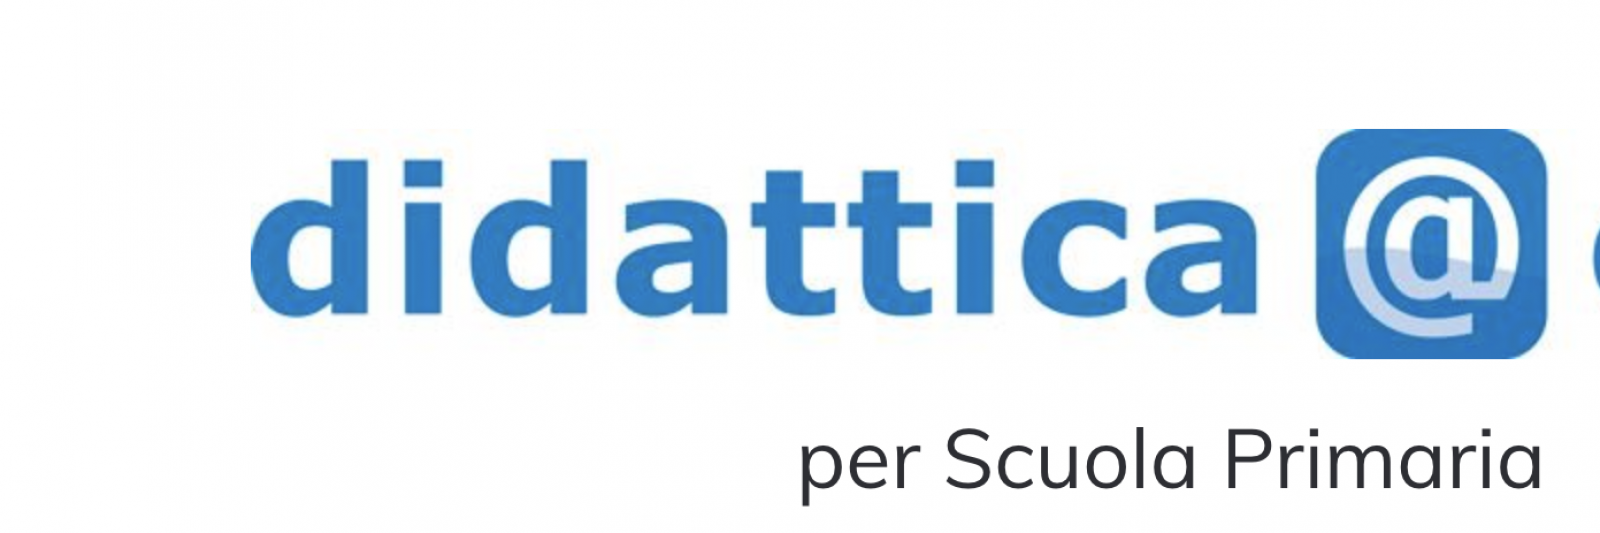 Logo del sito per la didattica a distanza di Raffaello Digitale.